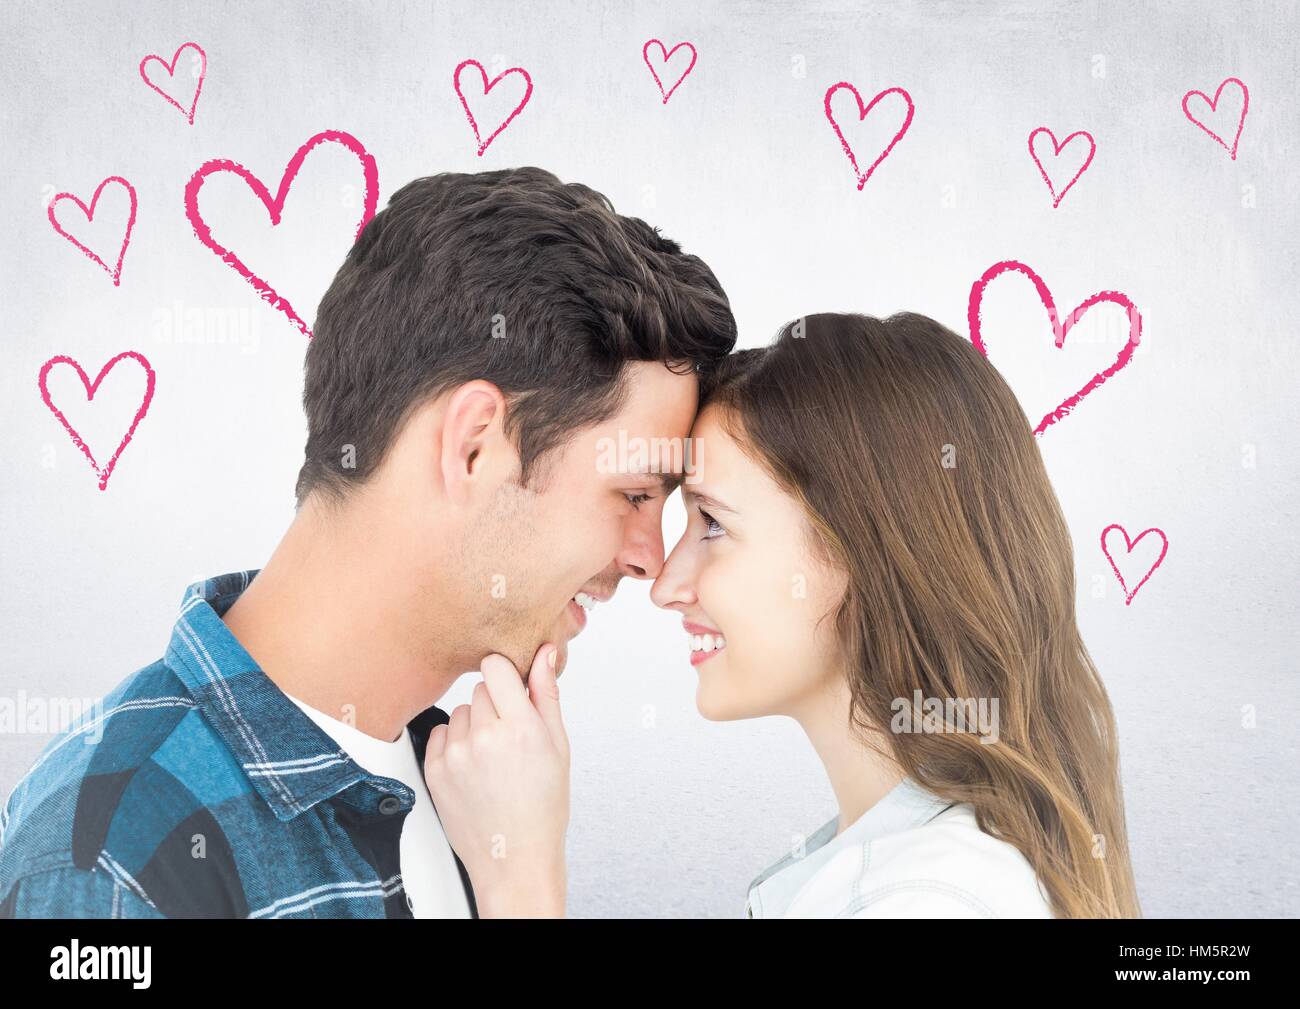 Romantic couple in love Stock Photo - Alamy